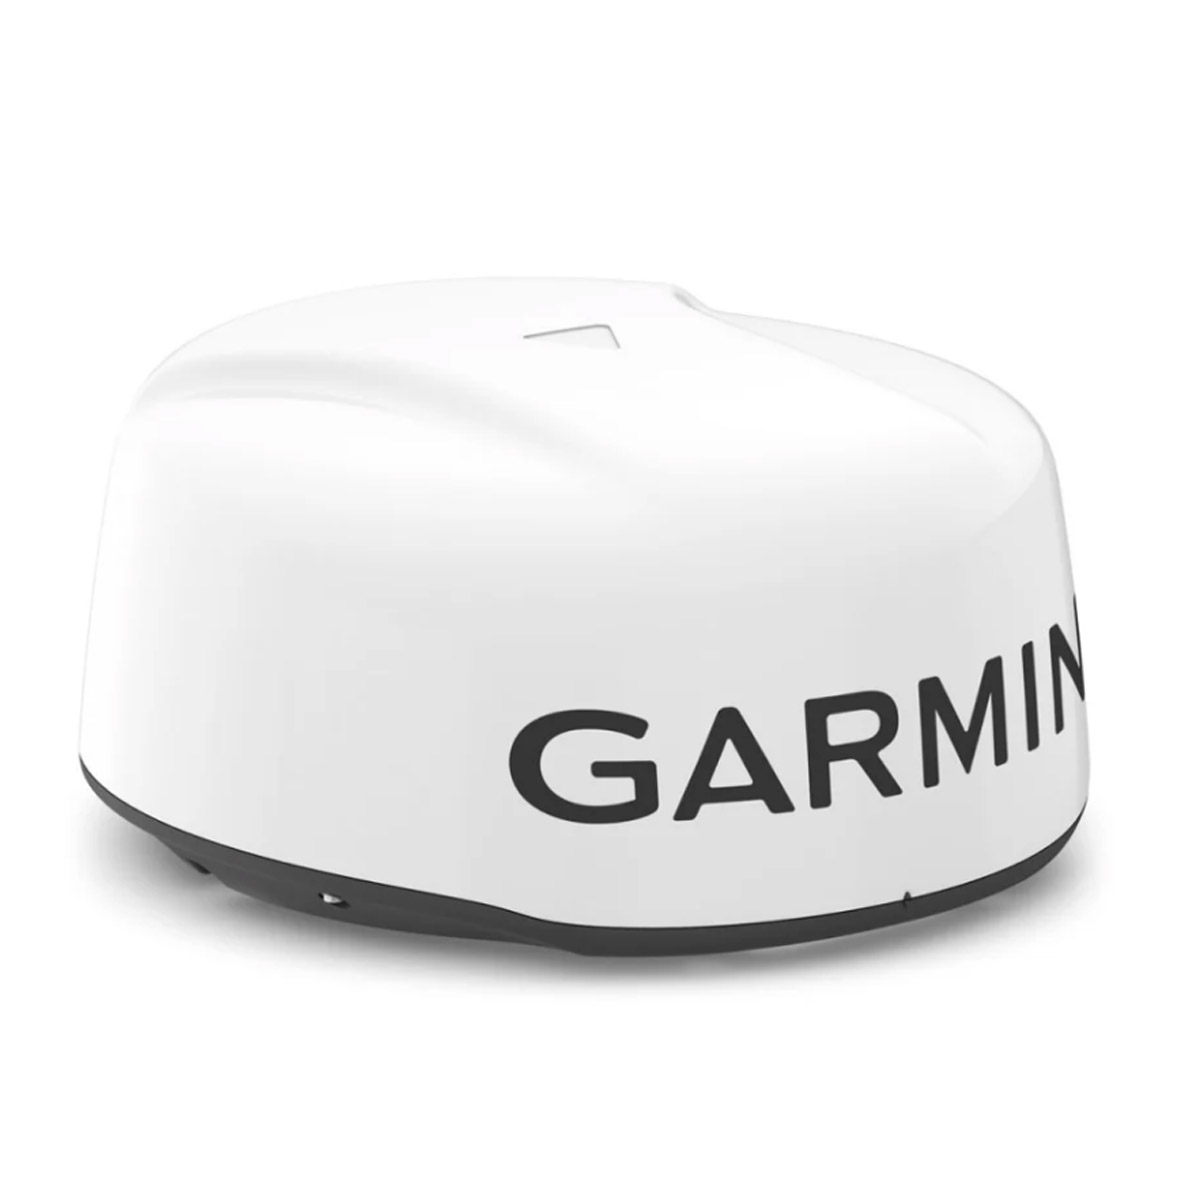 Garmin GMR 18 HD3 Dome